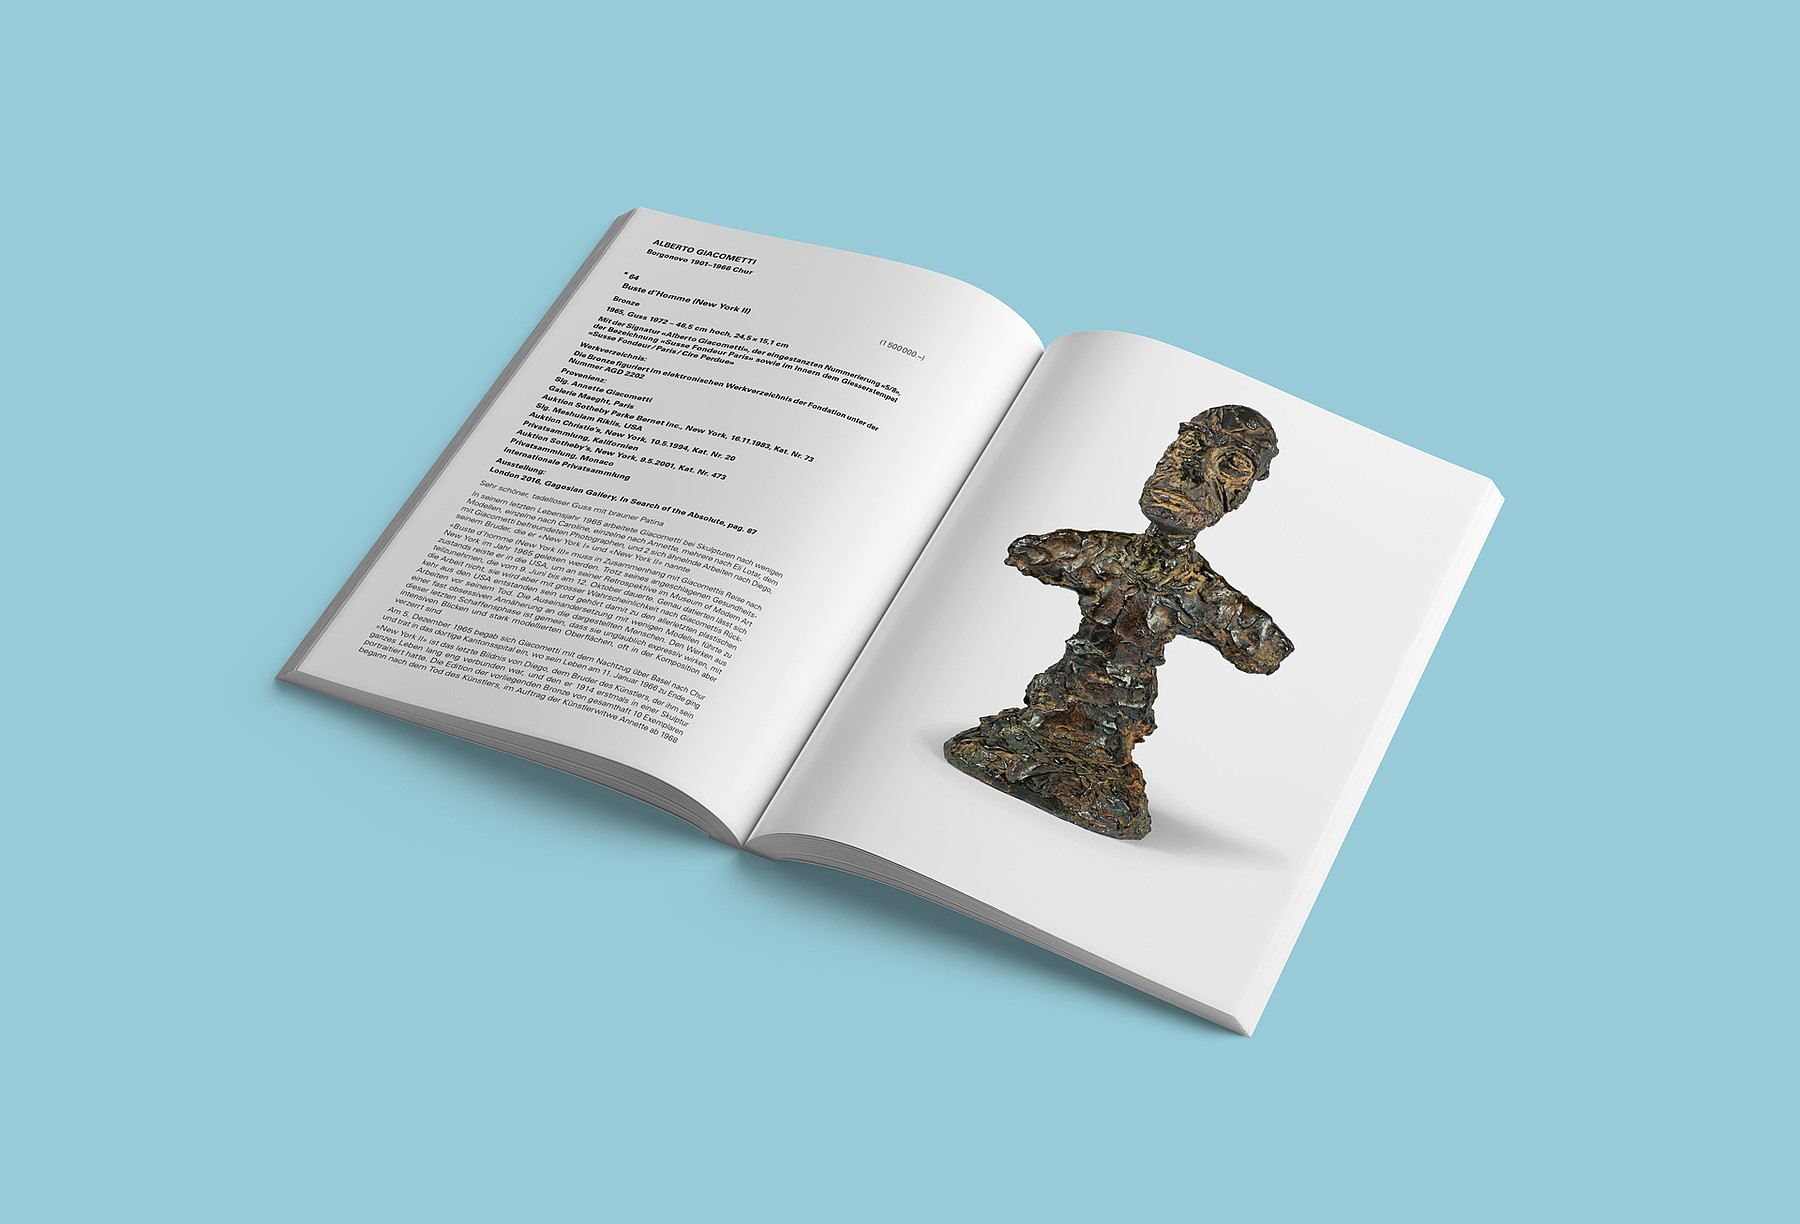 Bild und Beschreibung einer Skulptur von Alberto Giacometti im Auktionskatalog der Galerie Kornfeld